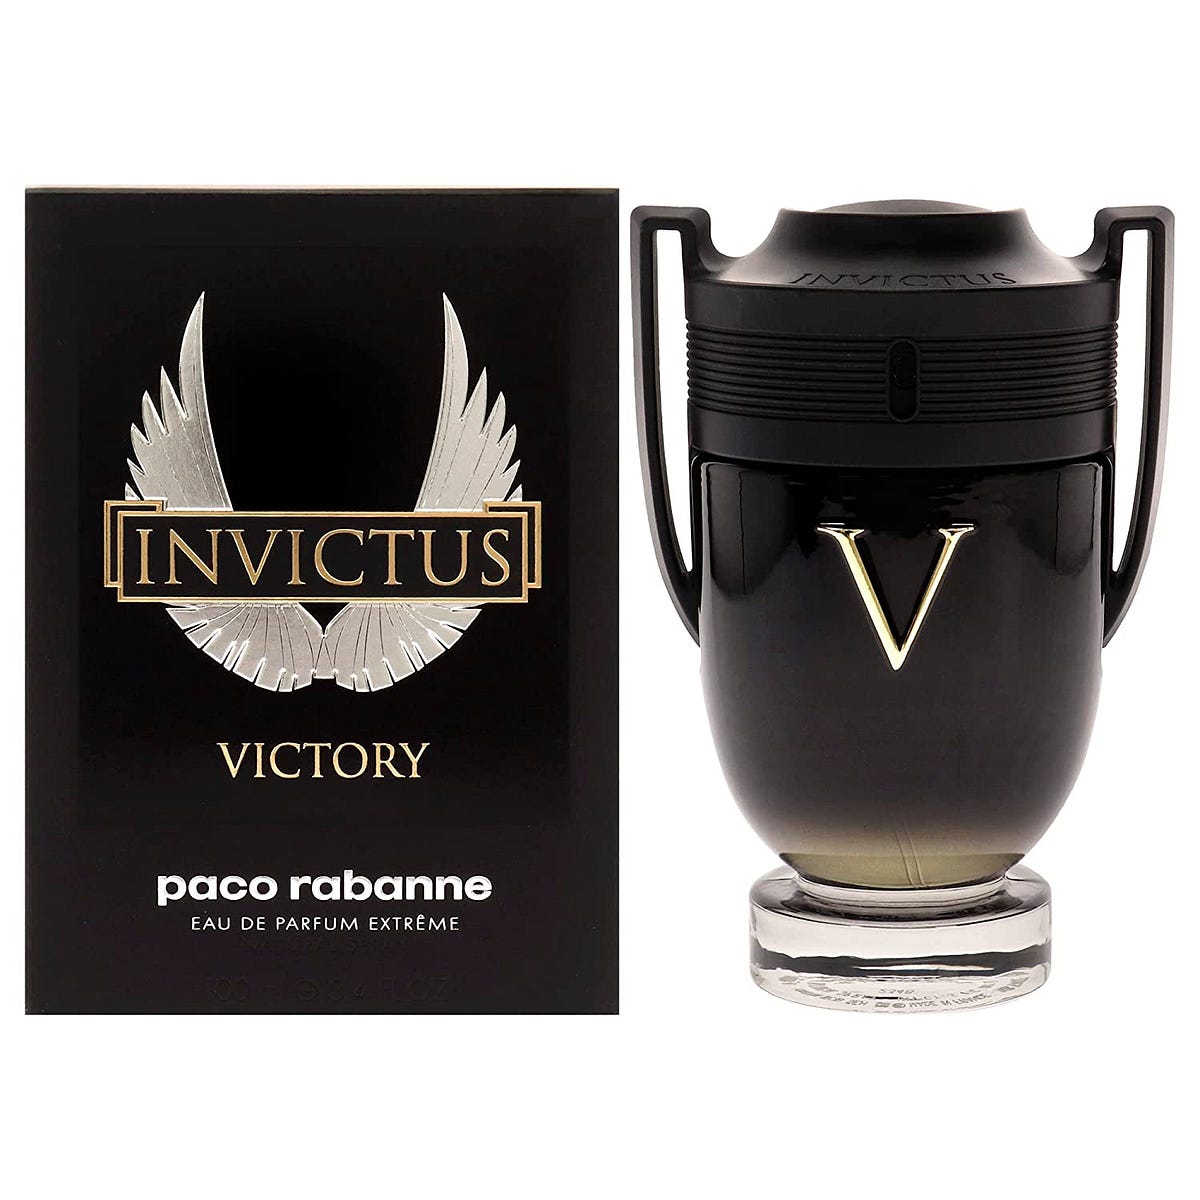 Invictus Victory Cologne for Men - Jforgusion - Medium